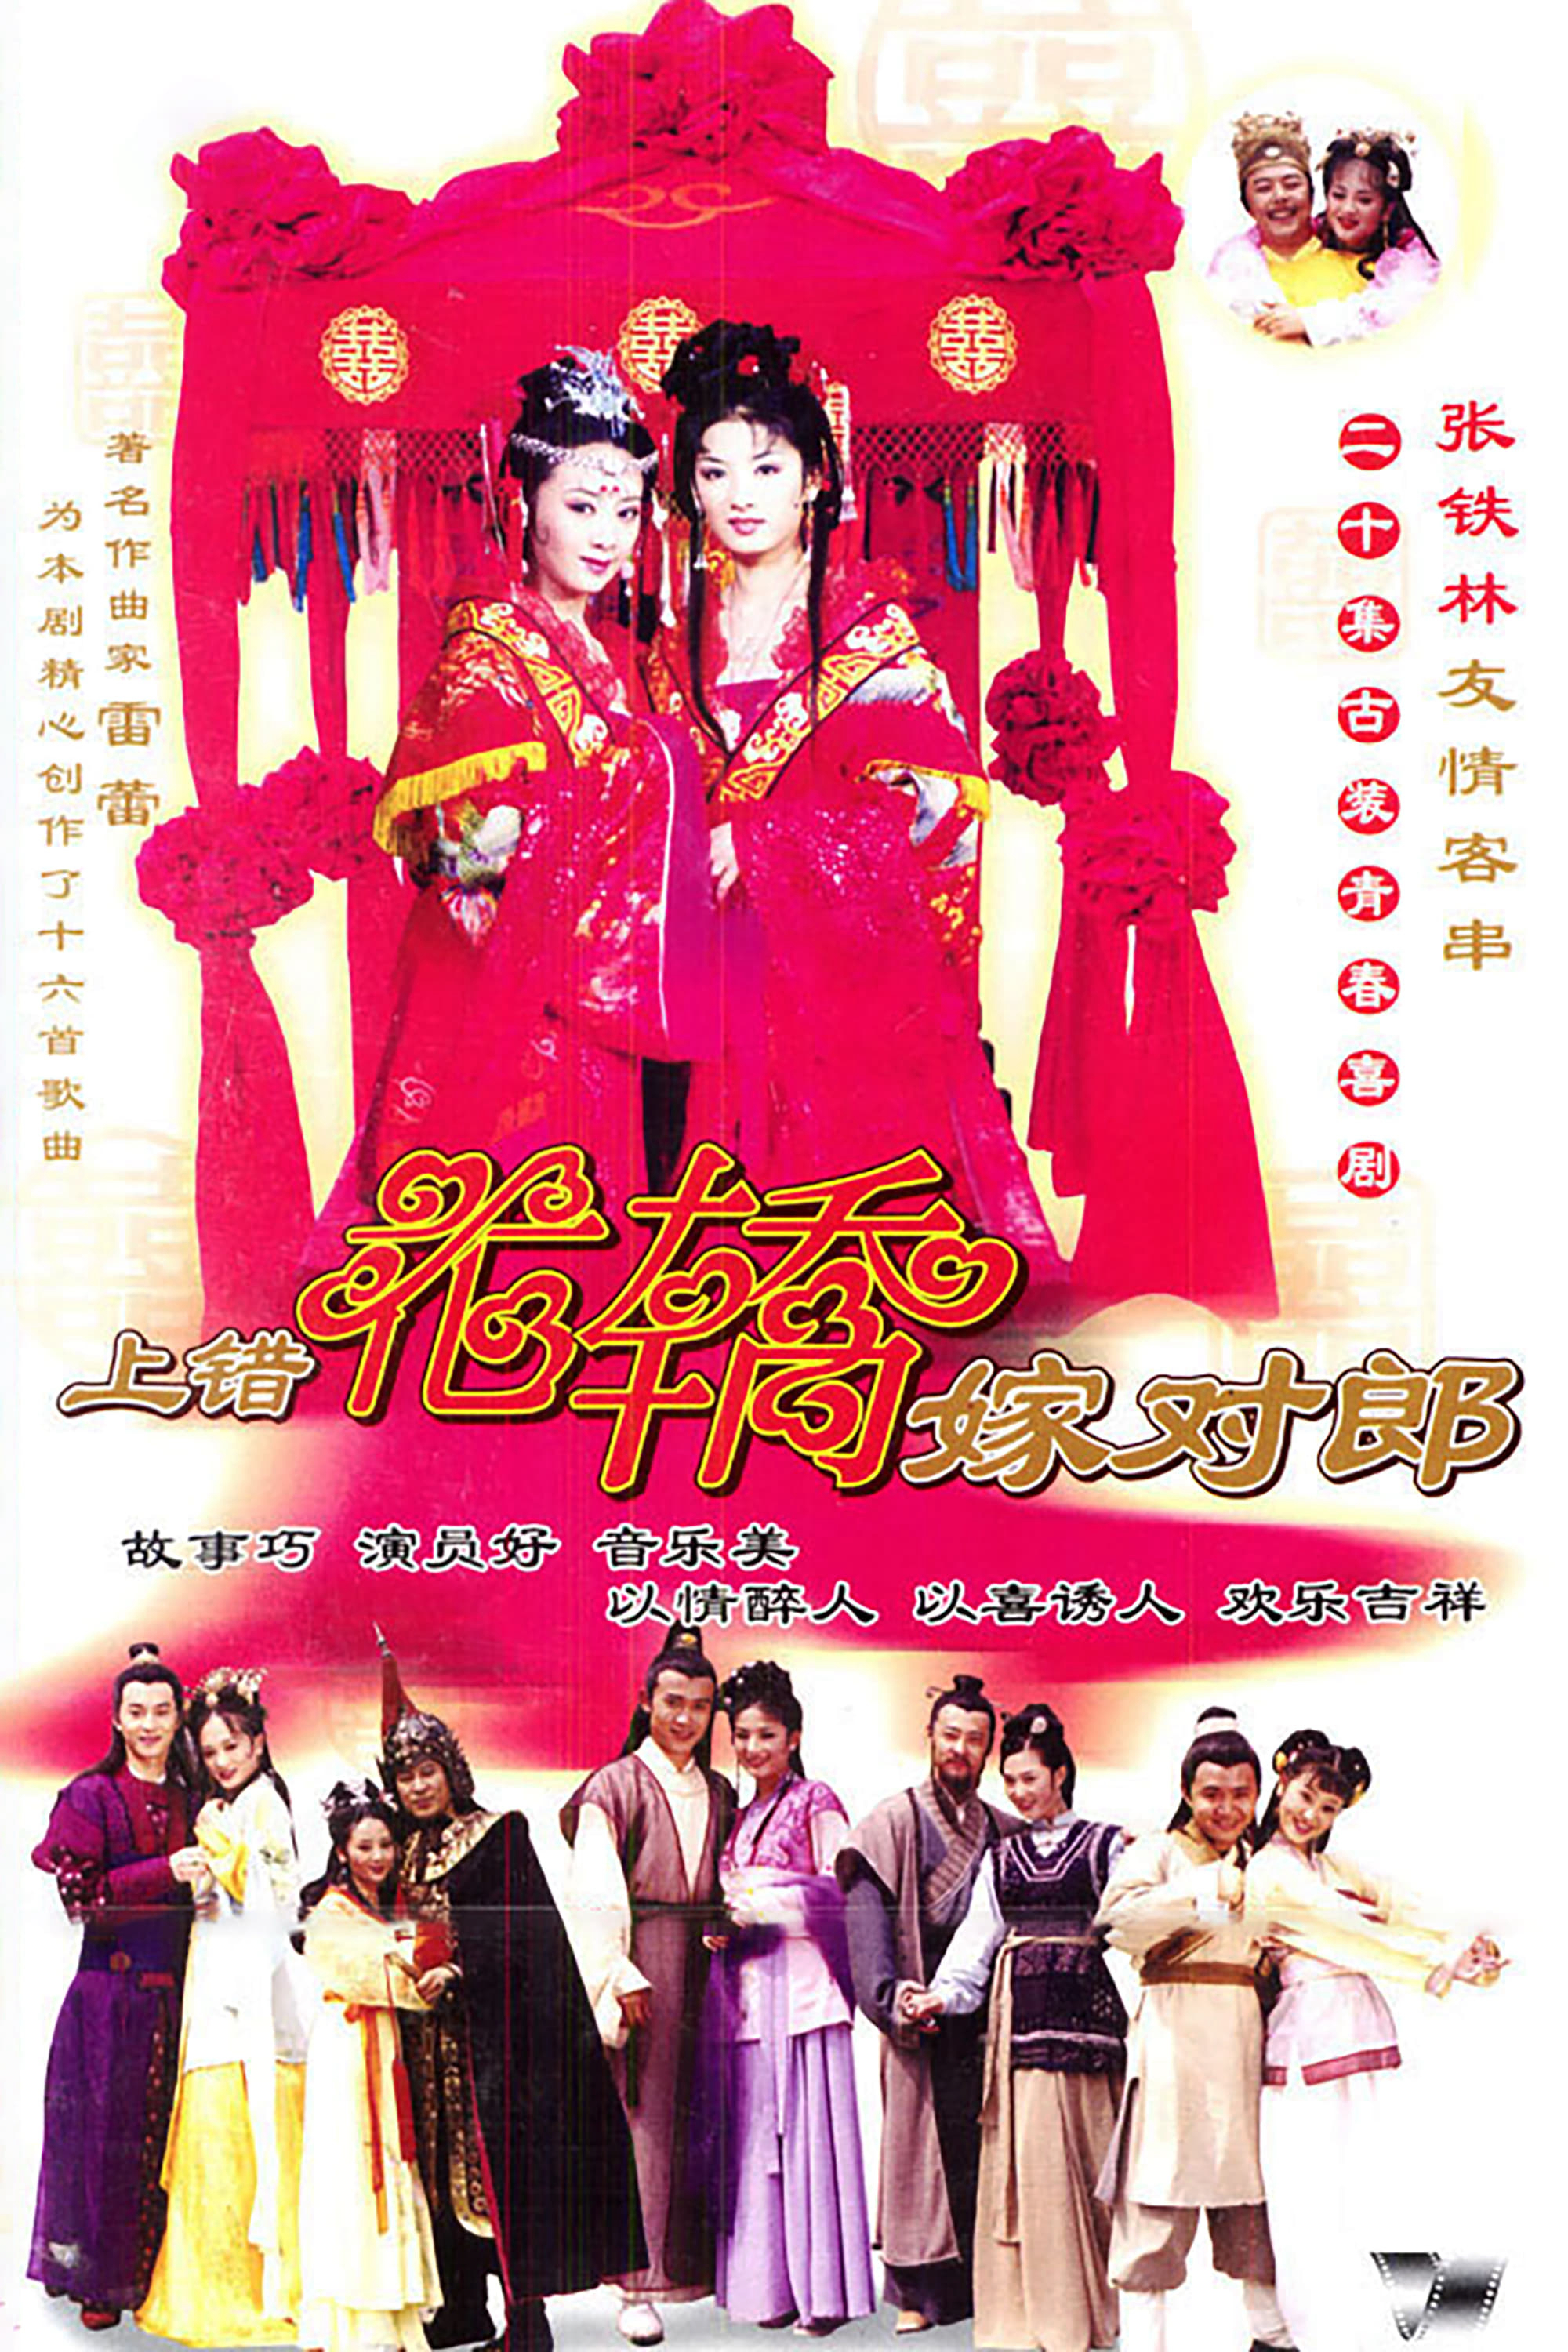 Poster Phim Lên Nhầm Kiệu Hoa Được Chồng Như Ý (Two Bride, Wrong Carriage)